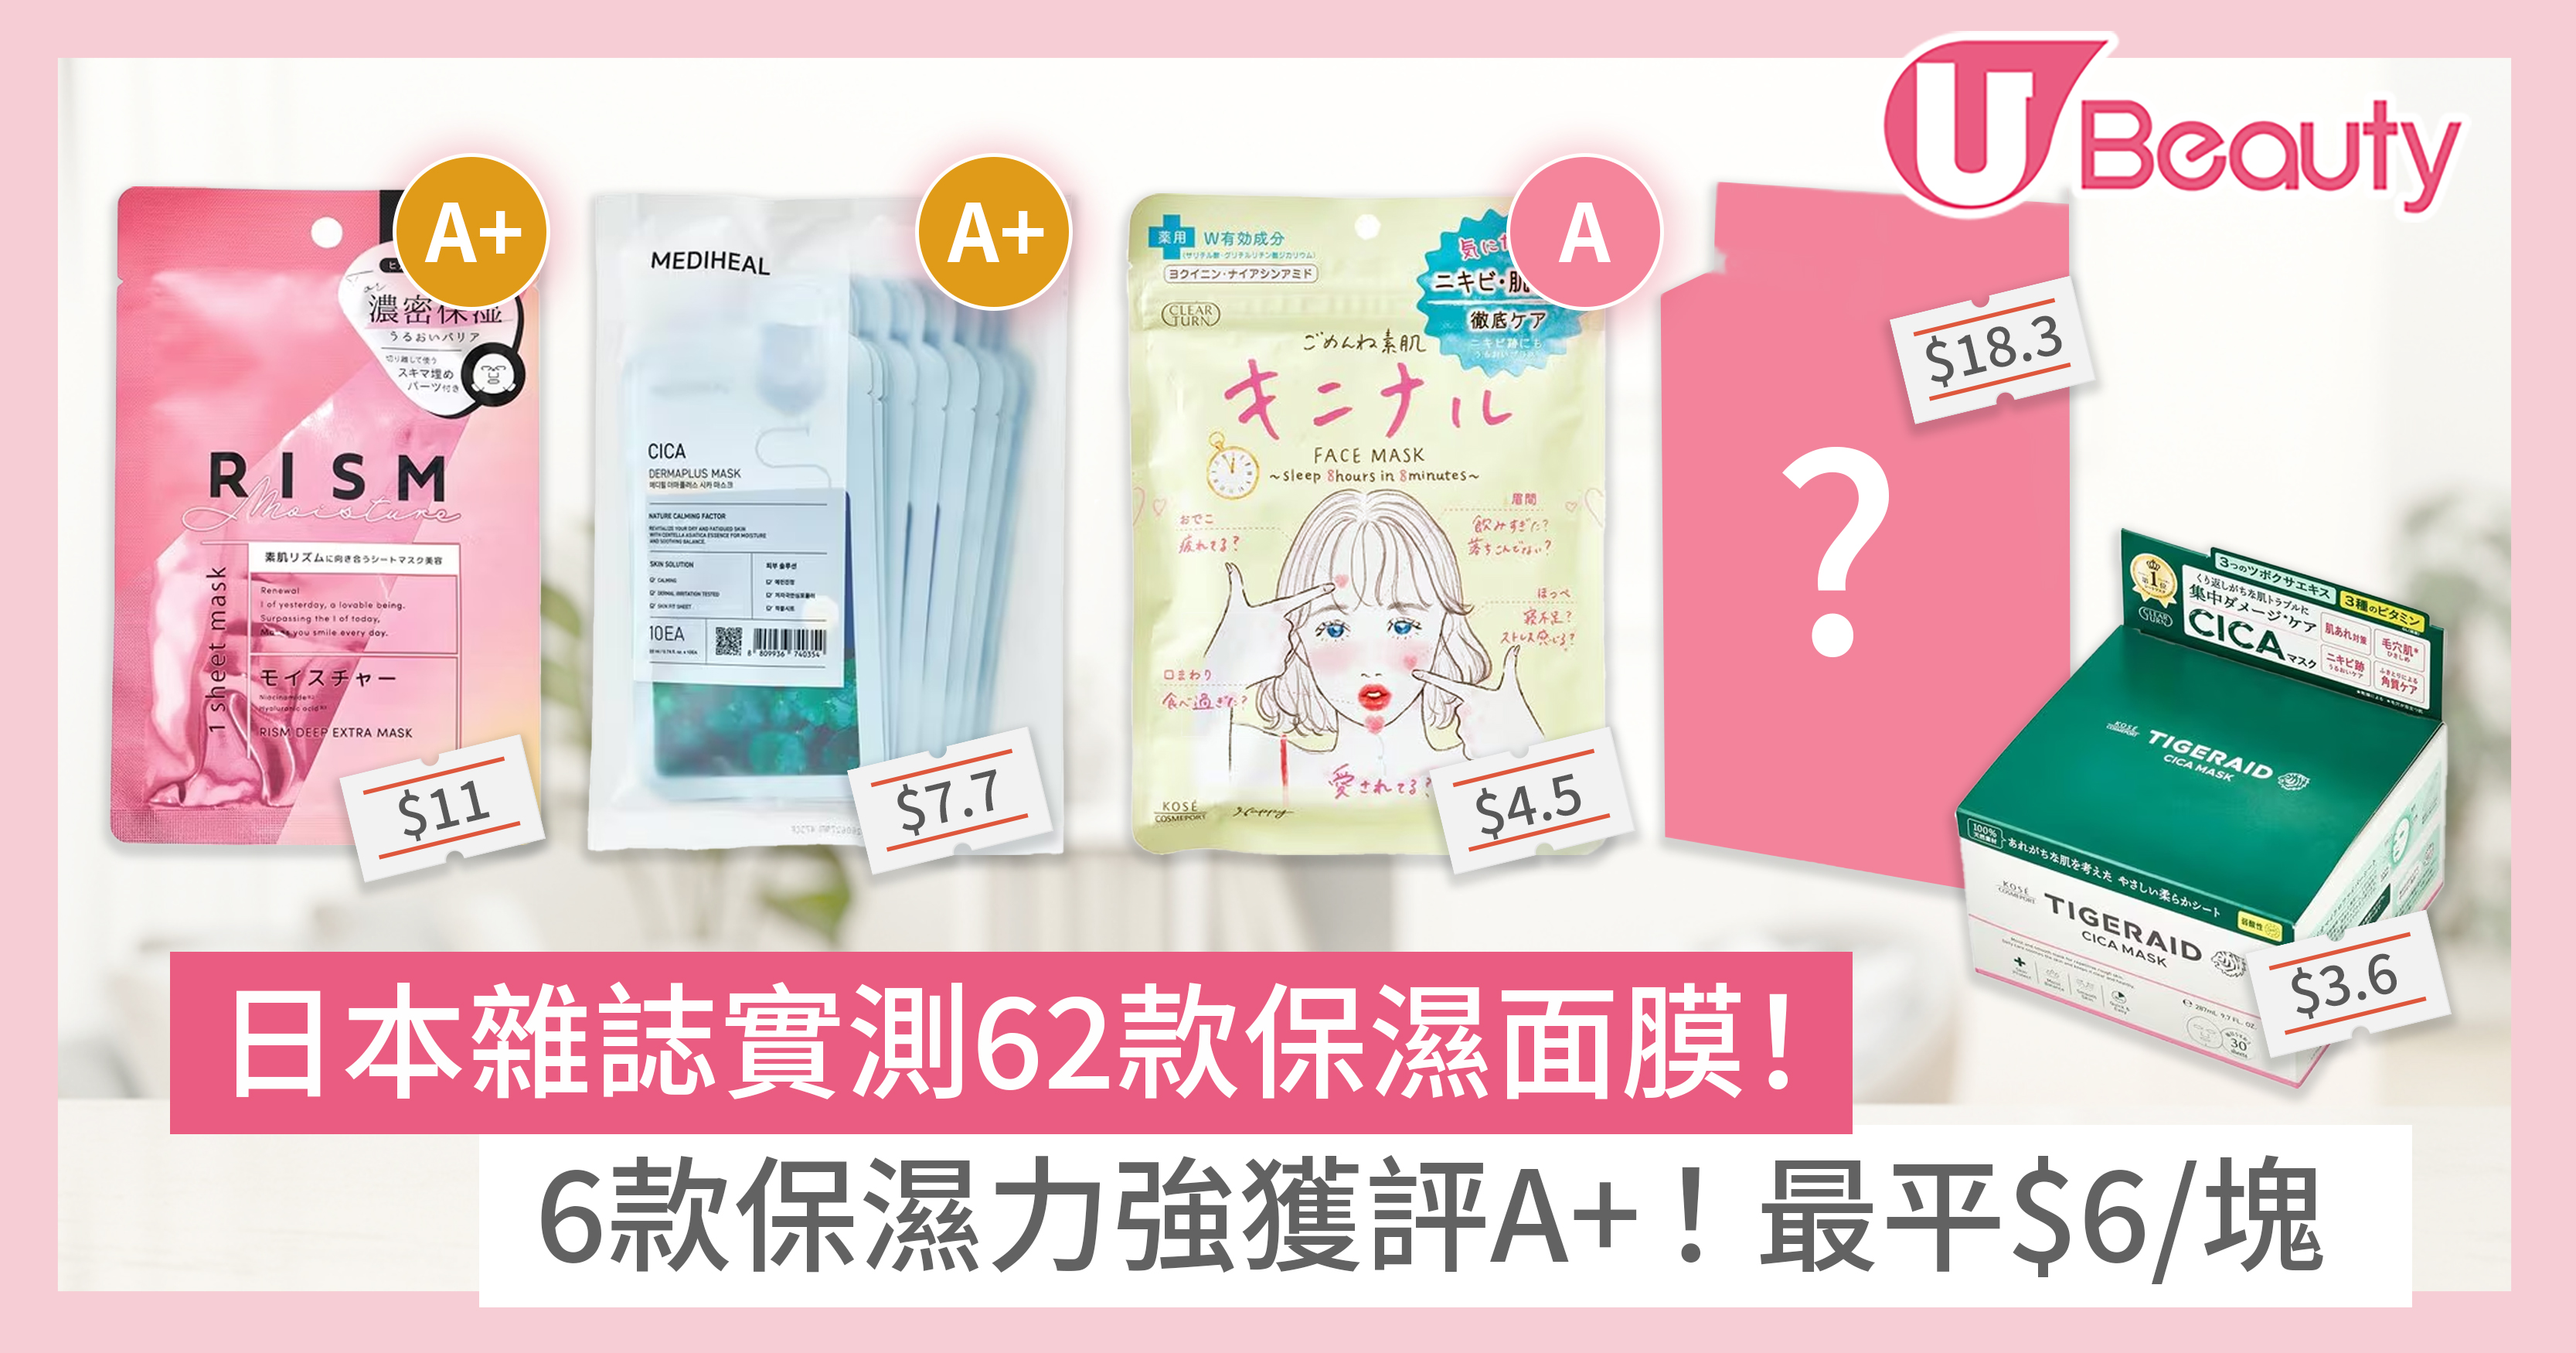 保濕面膜｜日本雜誌實測62款保濕面膜！6款保濕力強獲評A+！最平$6/塊